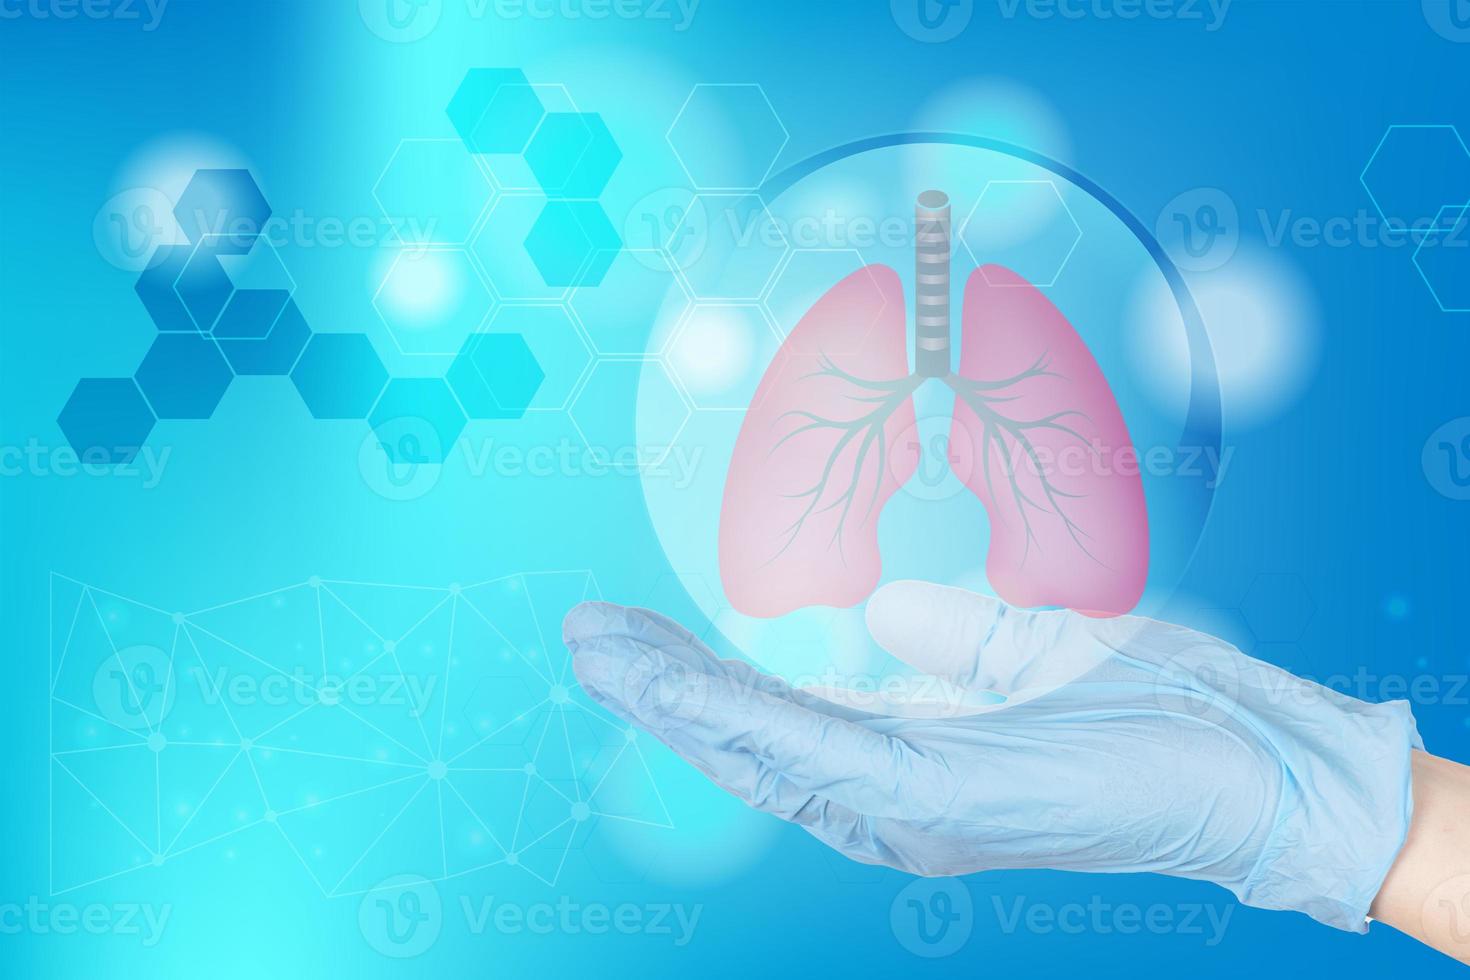 la main d'un médecin dans un gant contient la forme anatomique de poumons humains sains symbolisant le diagnostic, le traitement, les soins et la protection. affiche médicale. photo